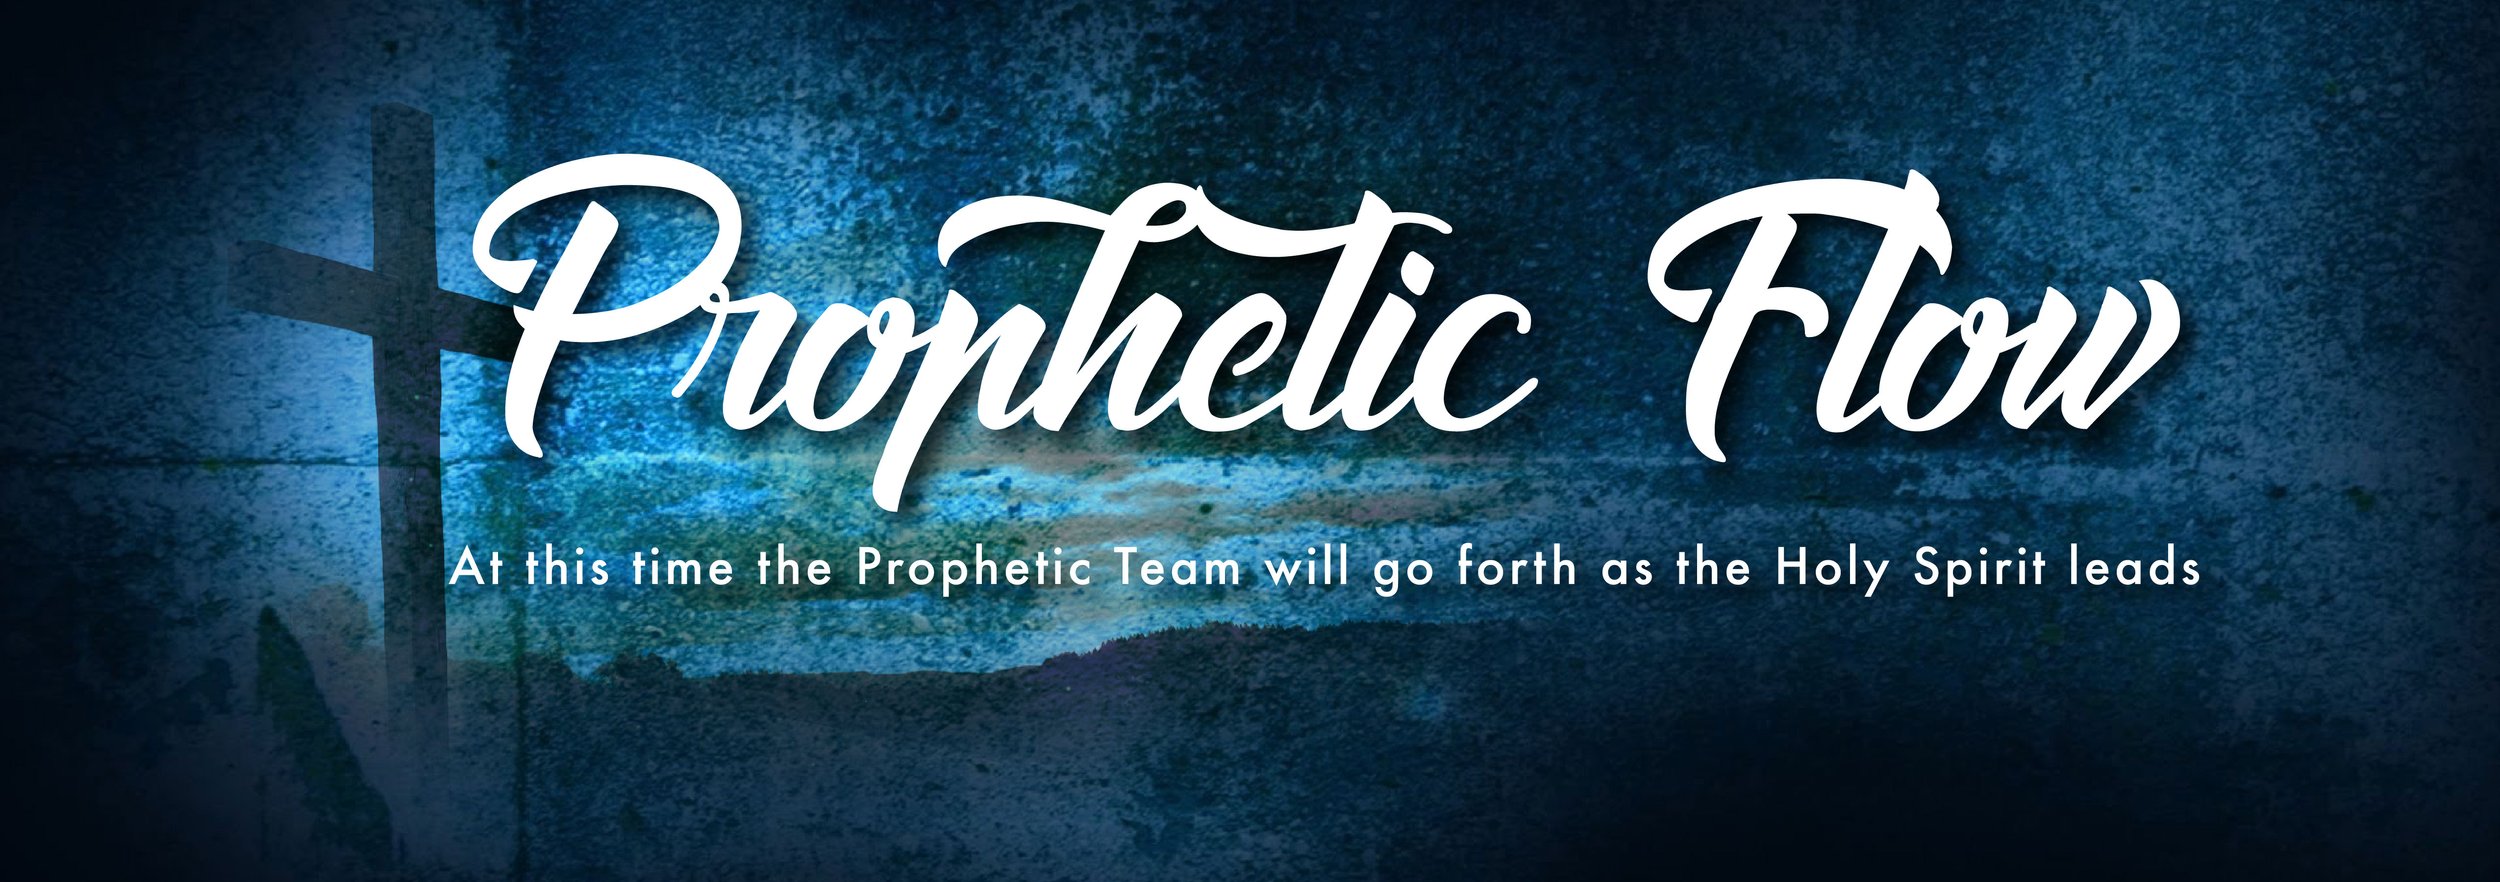 Prophetic Flow-01.jpg